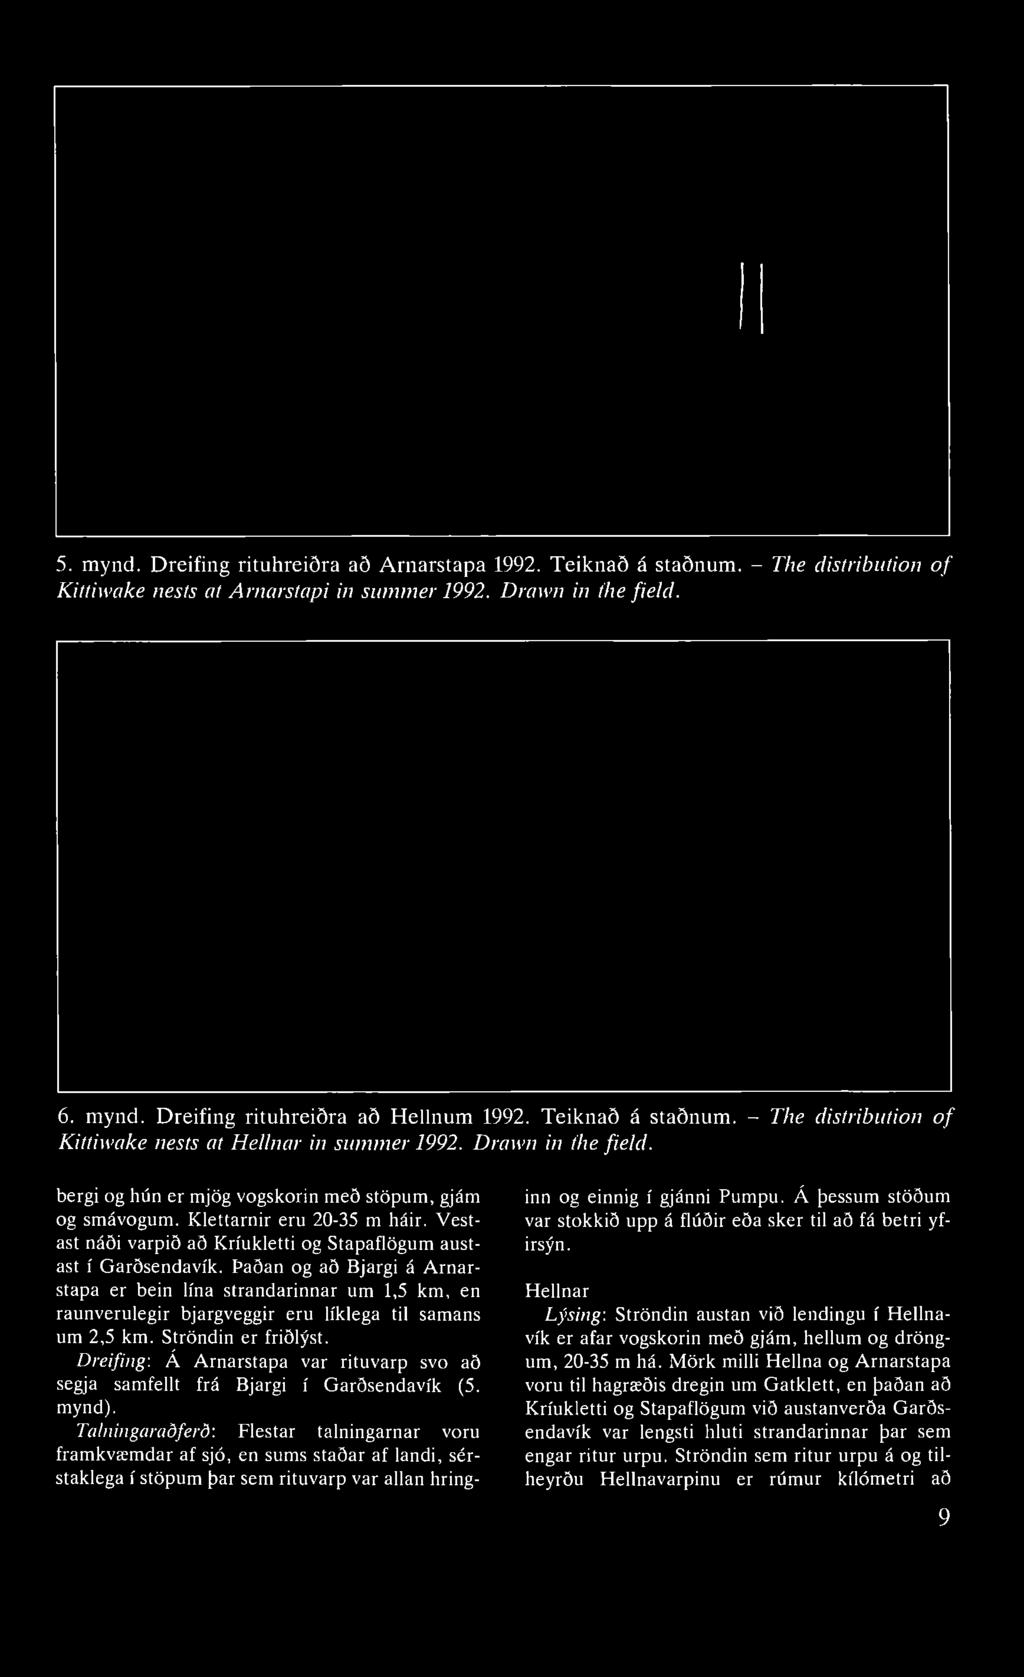 5. mynd. Dreifing rituhreiðra að Arnarstapa 1992. Teiknað á staðnum. - The distribution of Kittiwake nests at Arnarstapi in summer 1992. Drawn in the field. 6. mynd. Dreifing rituhreiðra að Hellnum 1992.